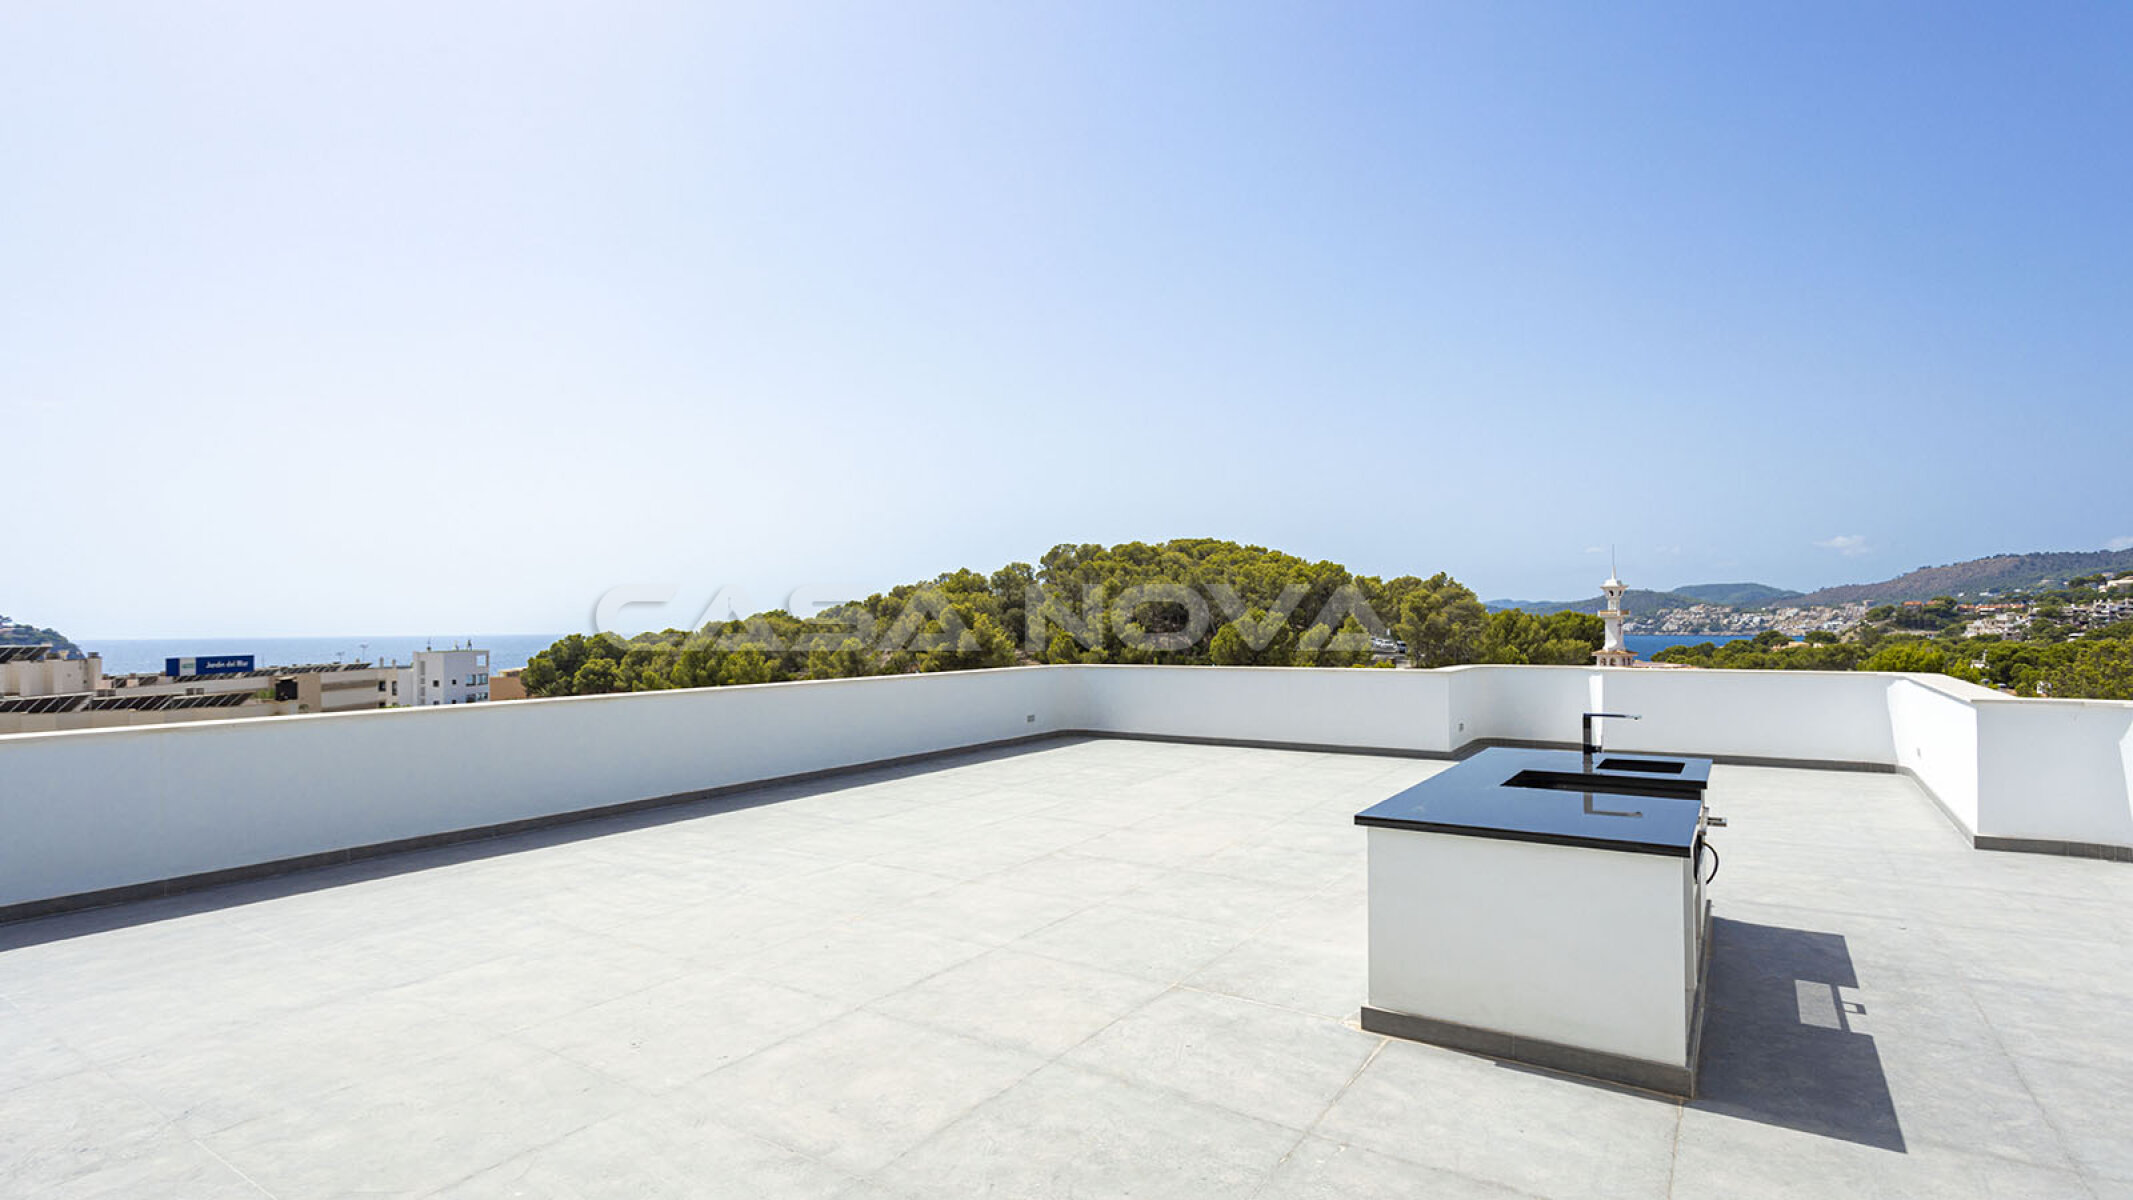 Amplia terraza con una moderna cocina de verano 